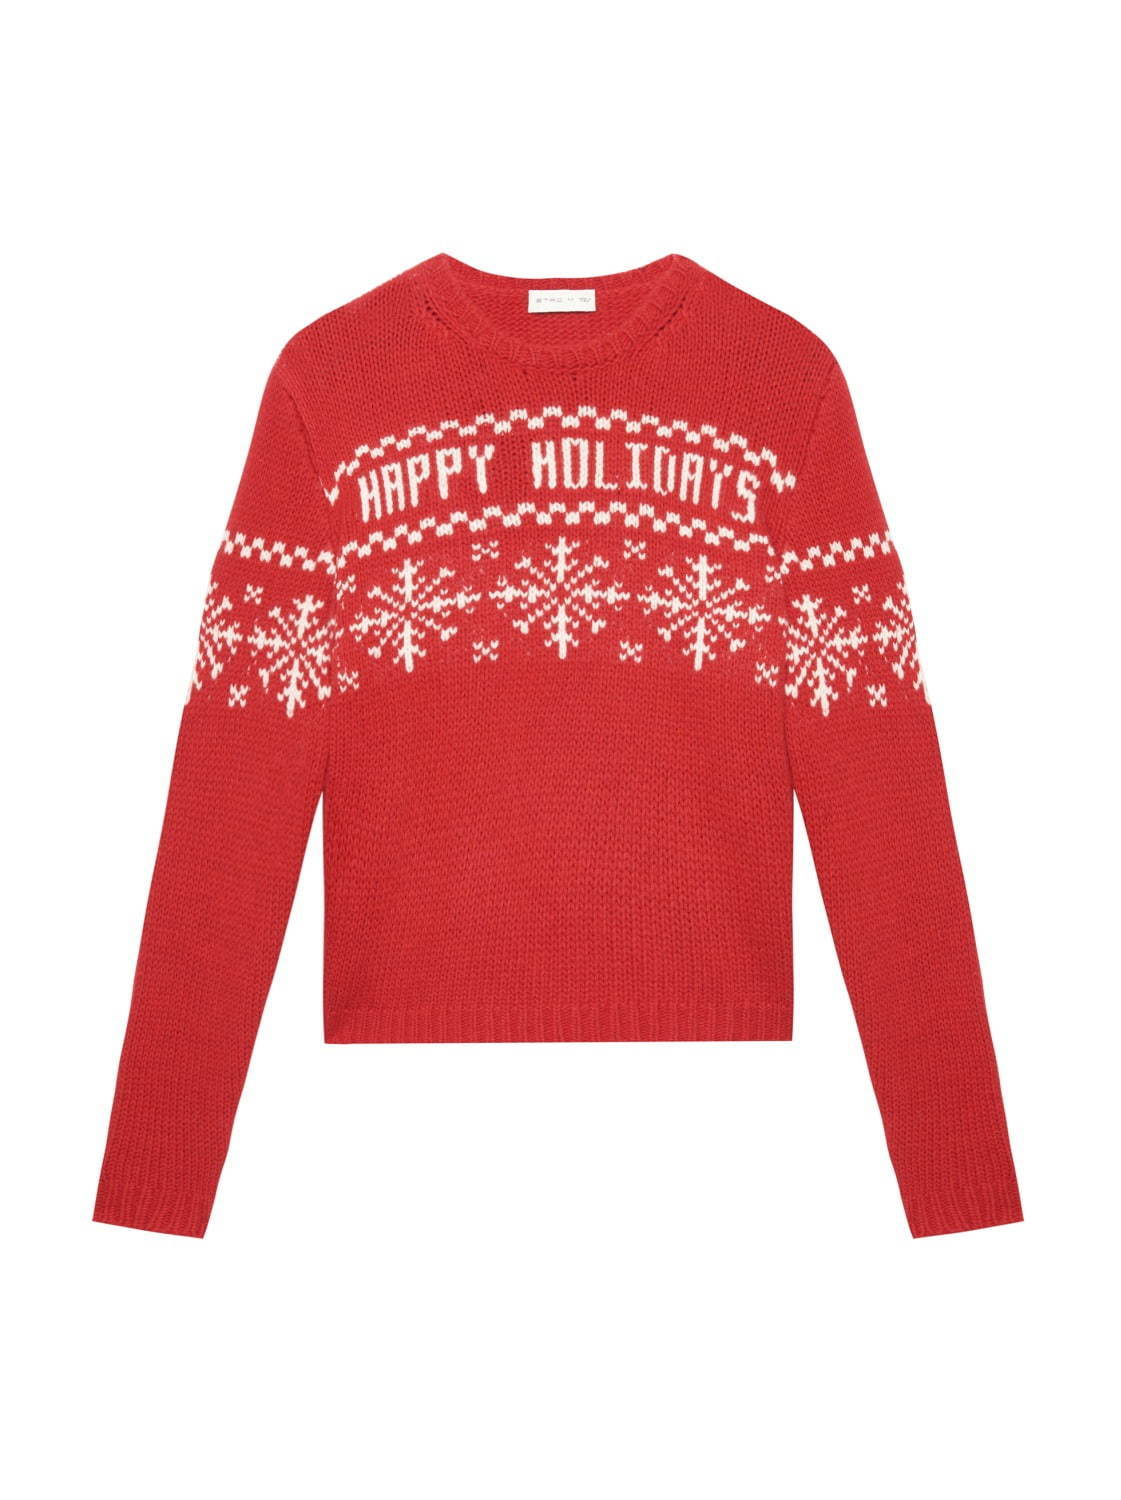 エトロ“雪の結晶”を配したセーターやマフラーなどがユニセックスで、クリスマス着想のデザイン｜写真3